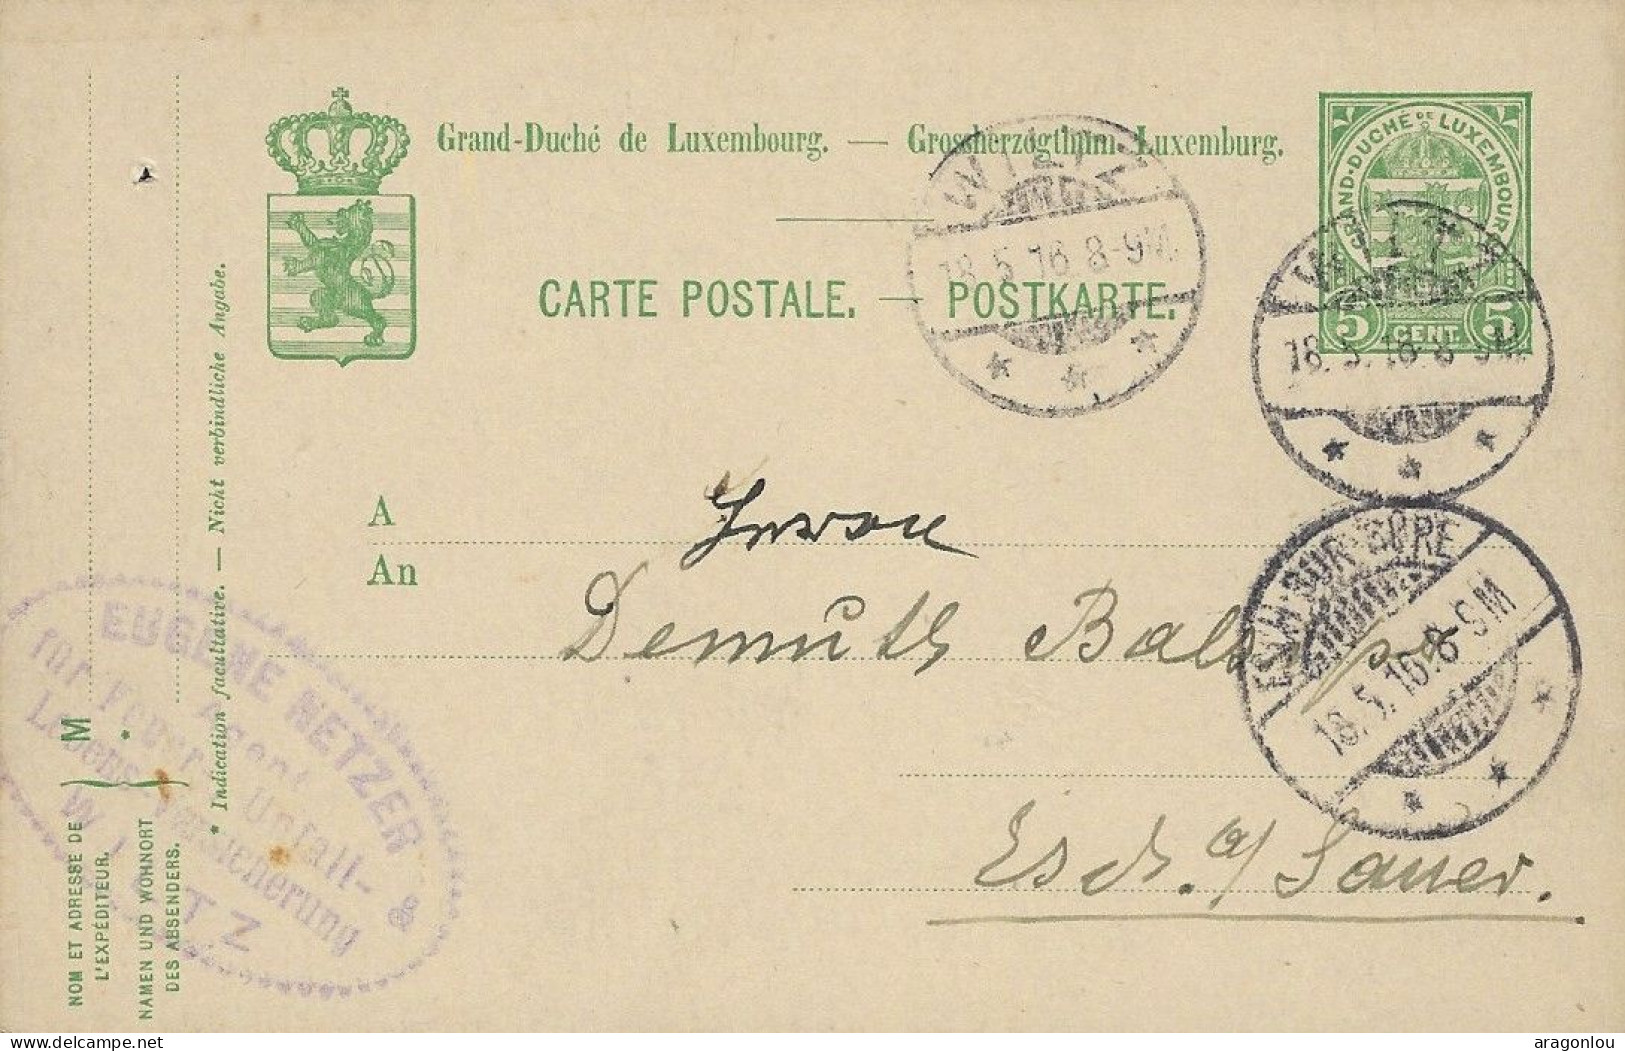 Luxembourg - Luxemburg - Carte-Postale 1916   Cachet Esch-sur-Sûre  -  Cachet Wiltz - Entiers Postaux